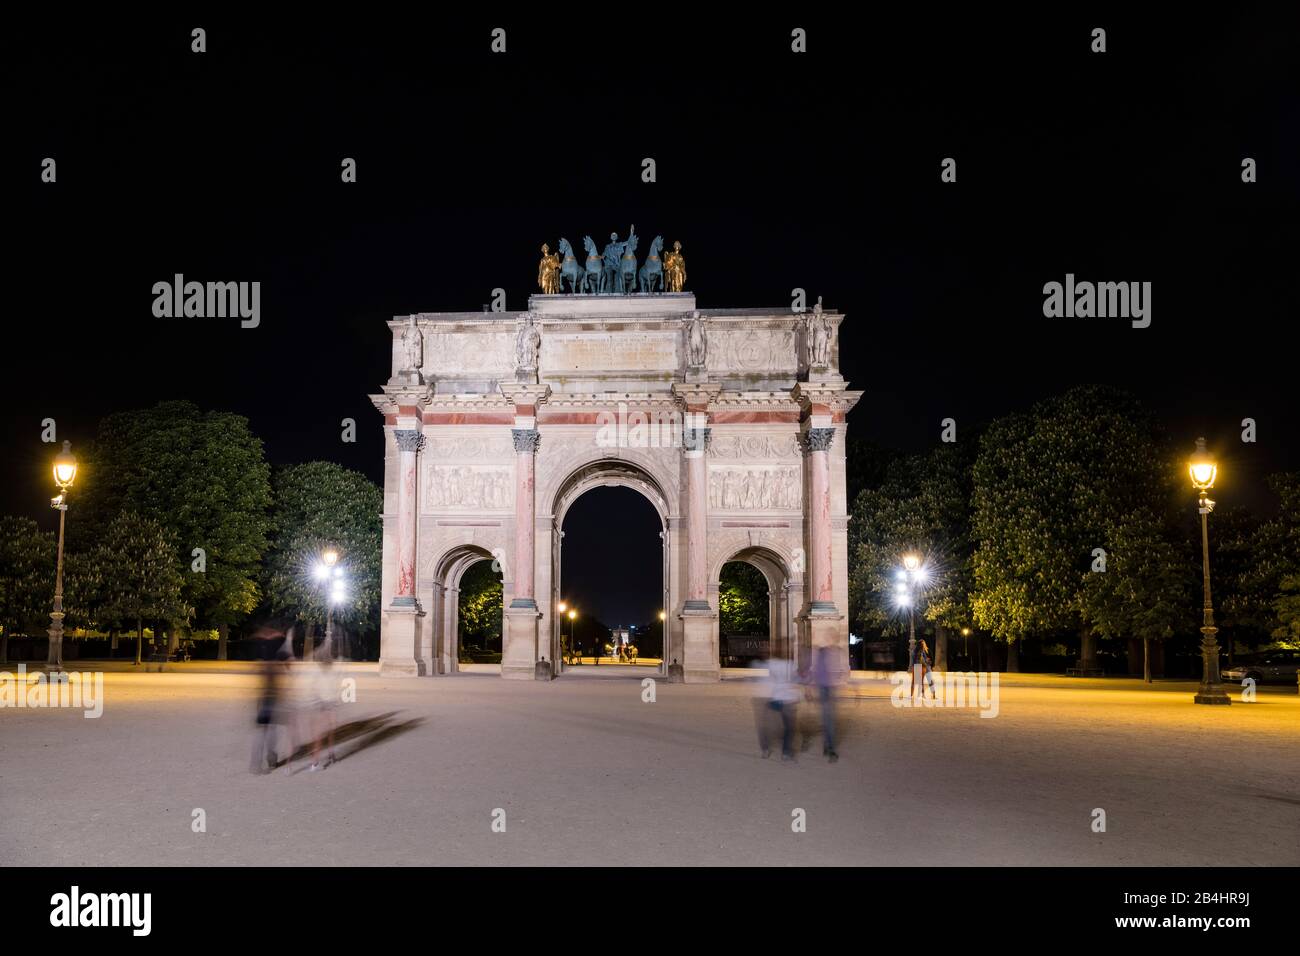 Touristen am nachts beleuchteter Arc de Triomphe du Carrousel mit Quadriga am Louvre, Paris, Frankreich, Europa Stock Photo